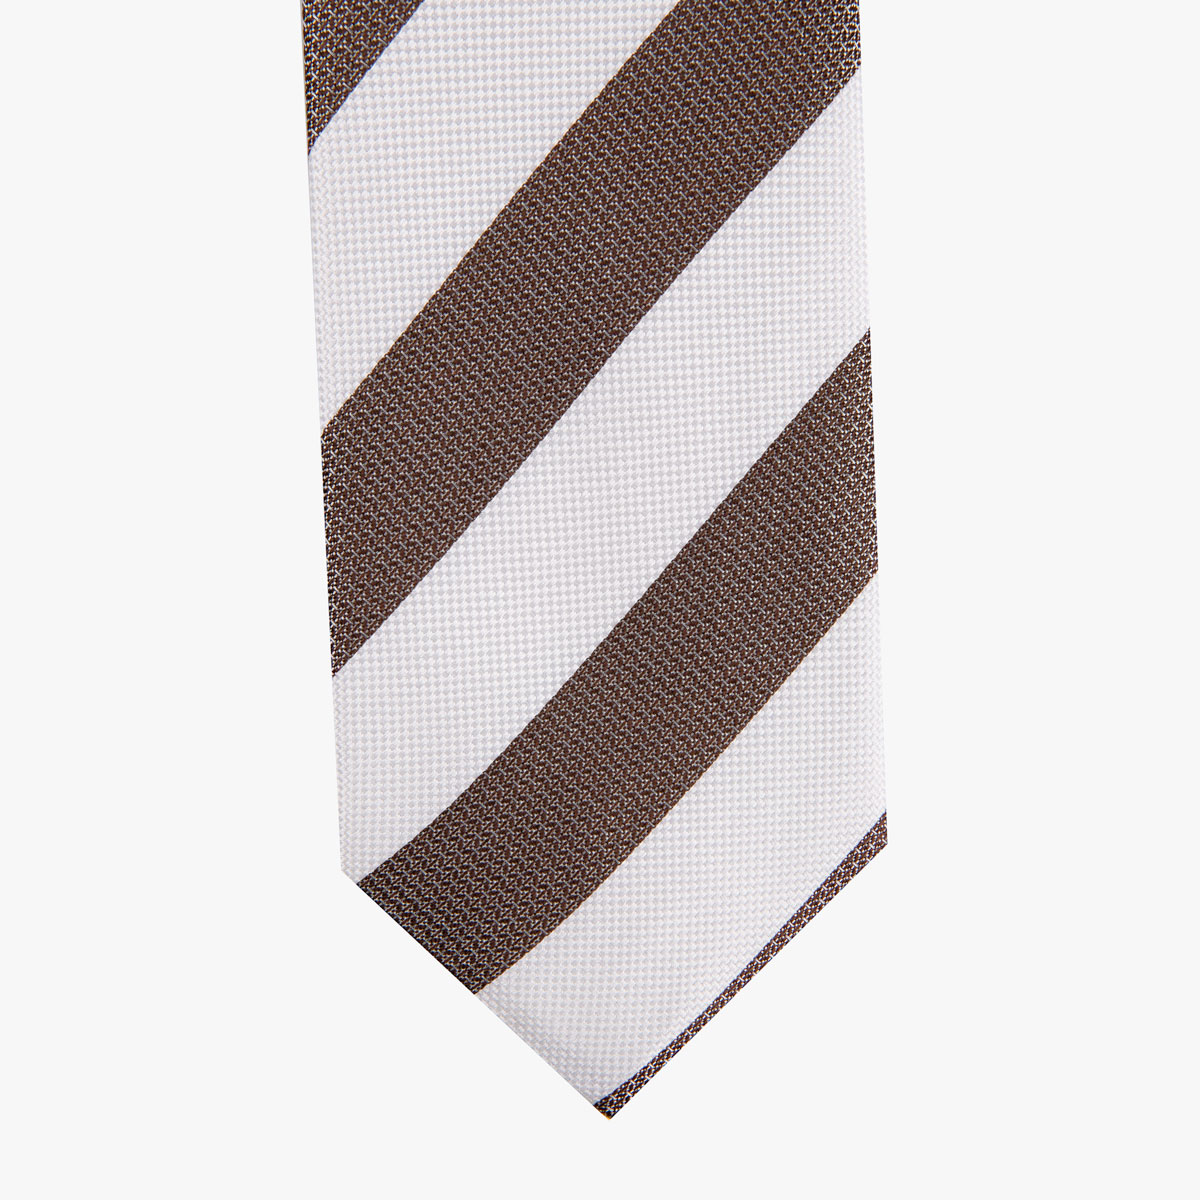 Krawatte glatt mit breiten Streifen in off-white und braun